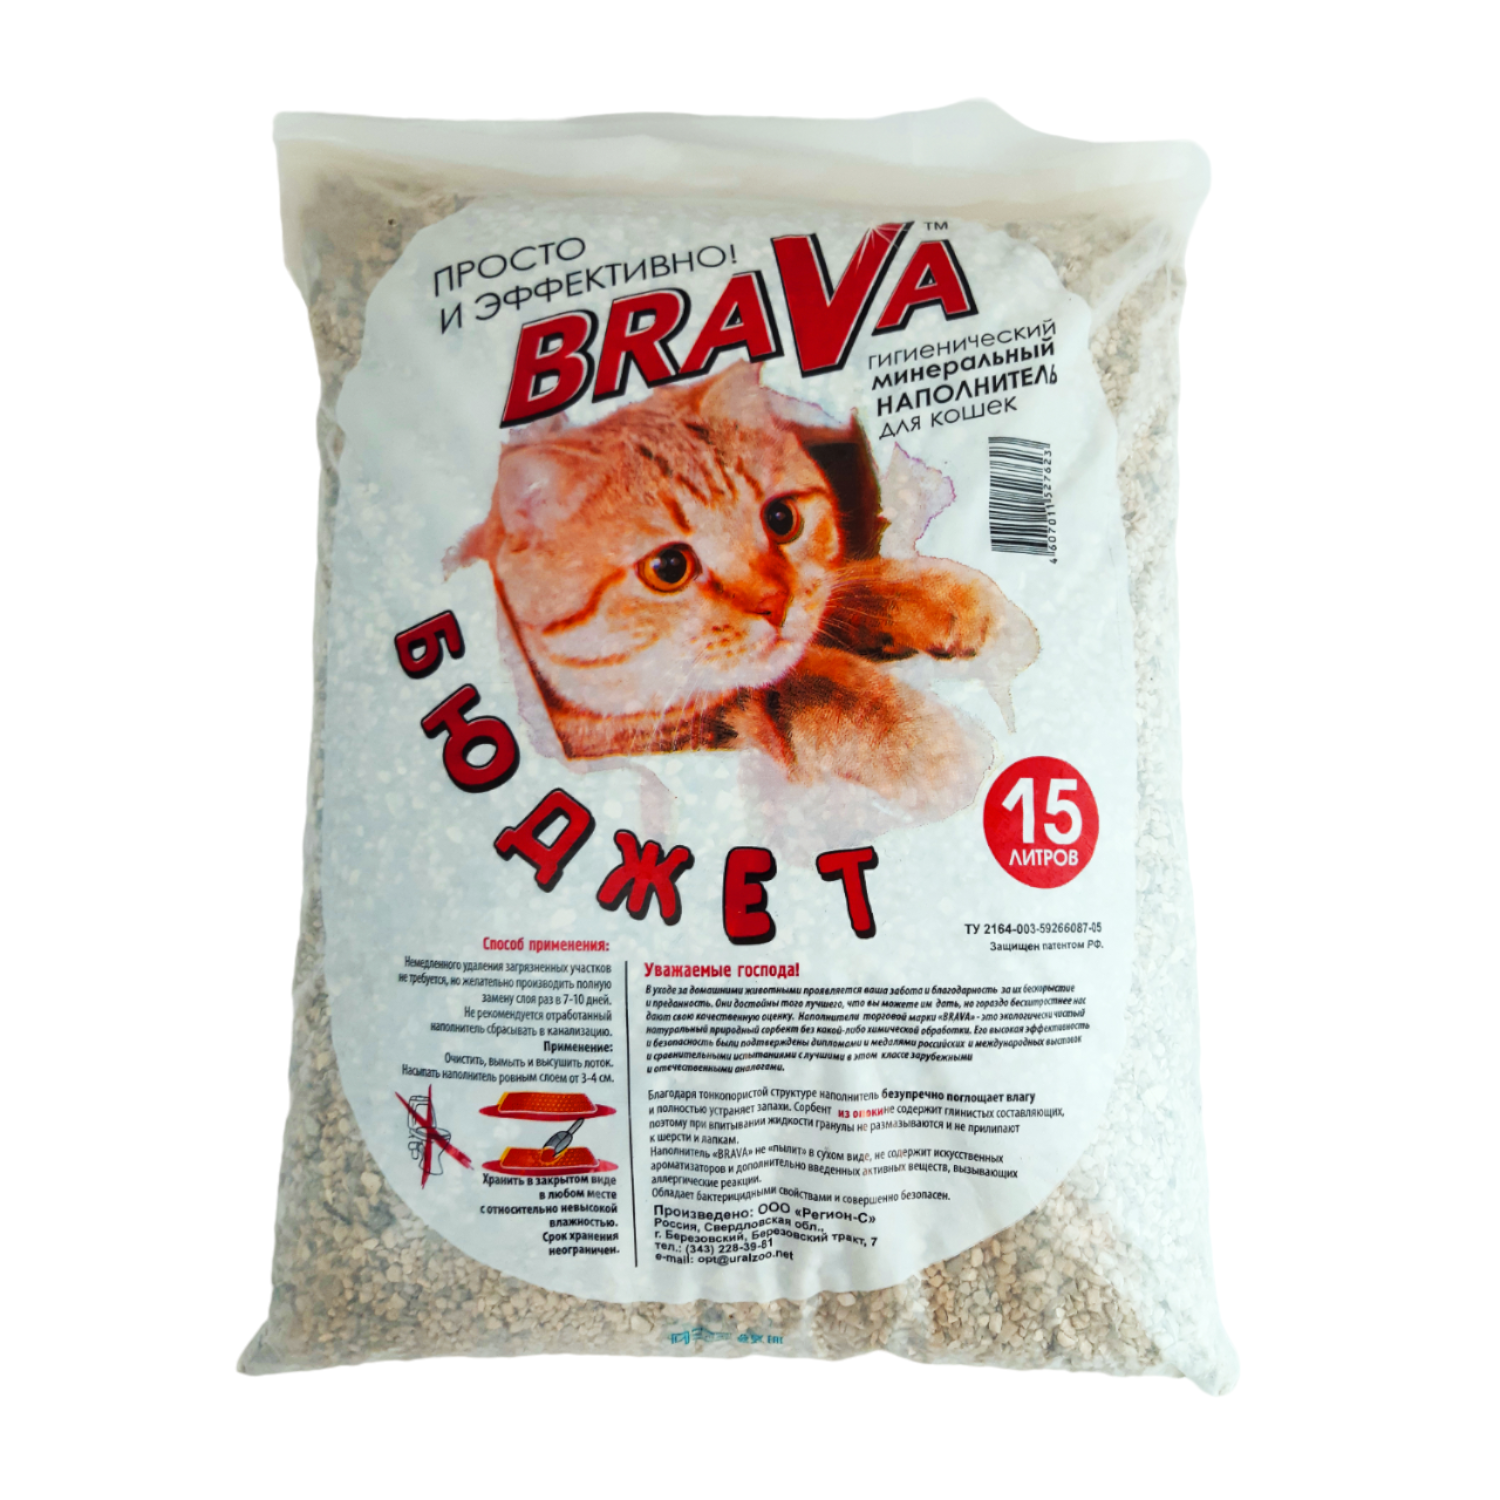 Наполнитель для кошек BraVa Бюджет опоковый минеральный 15л - фото 1